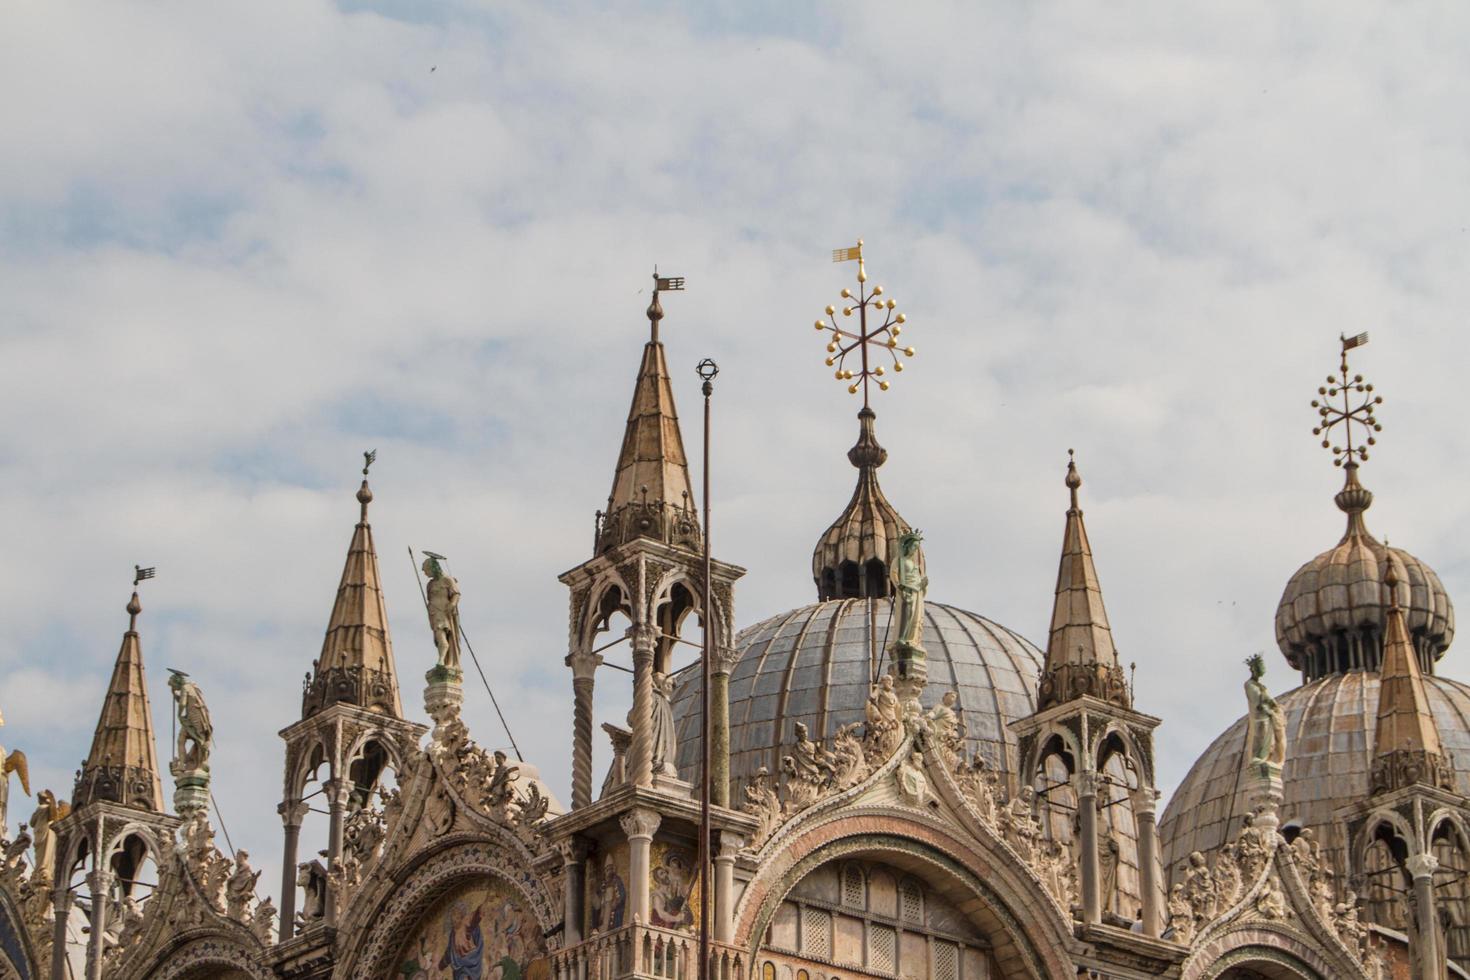 basilique saint-marc, cathédrale, église statues mosaïques détails palais des doges venise italie photo